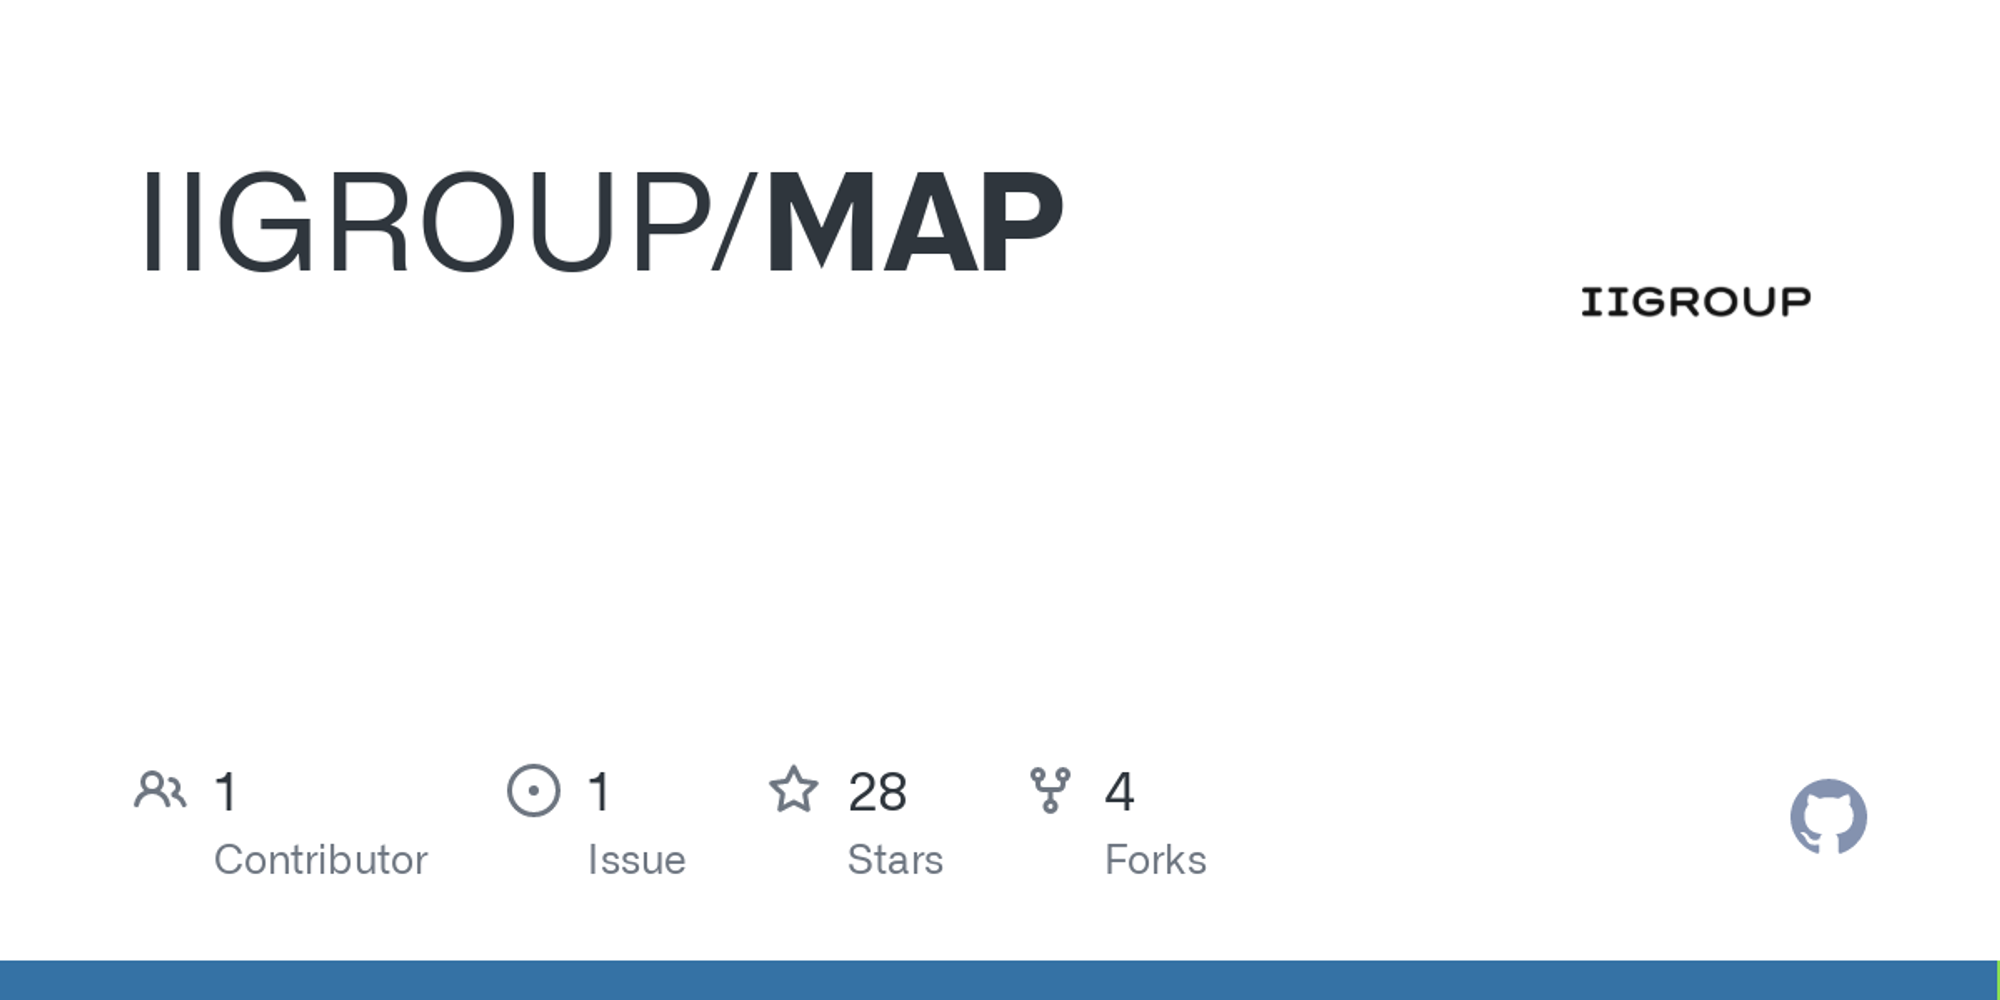 GitHub - IIGROUP/MAP